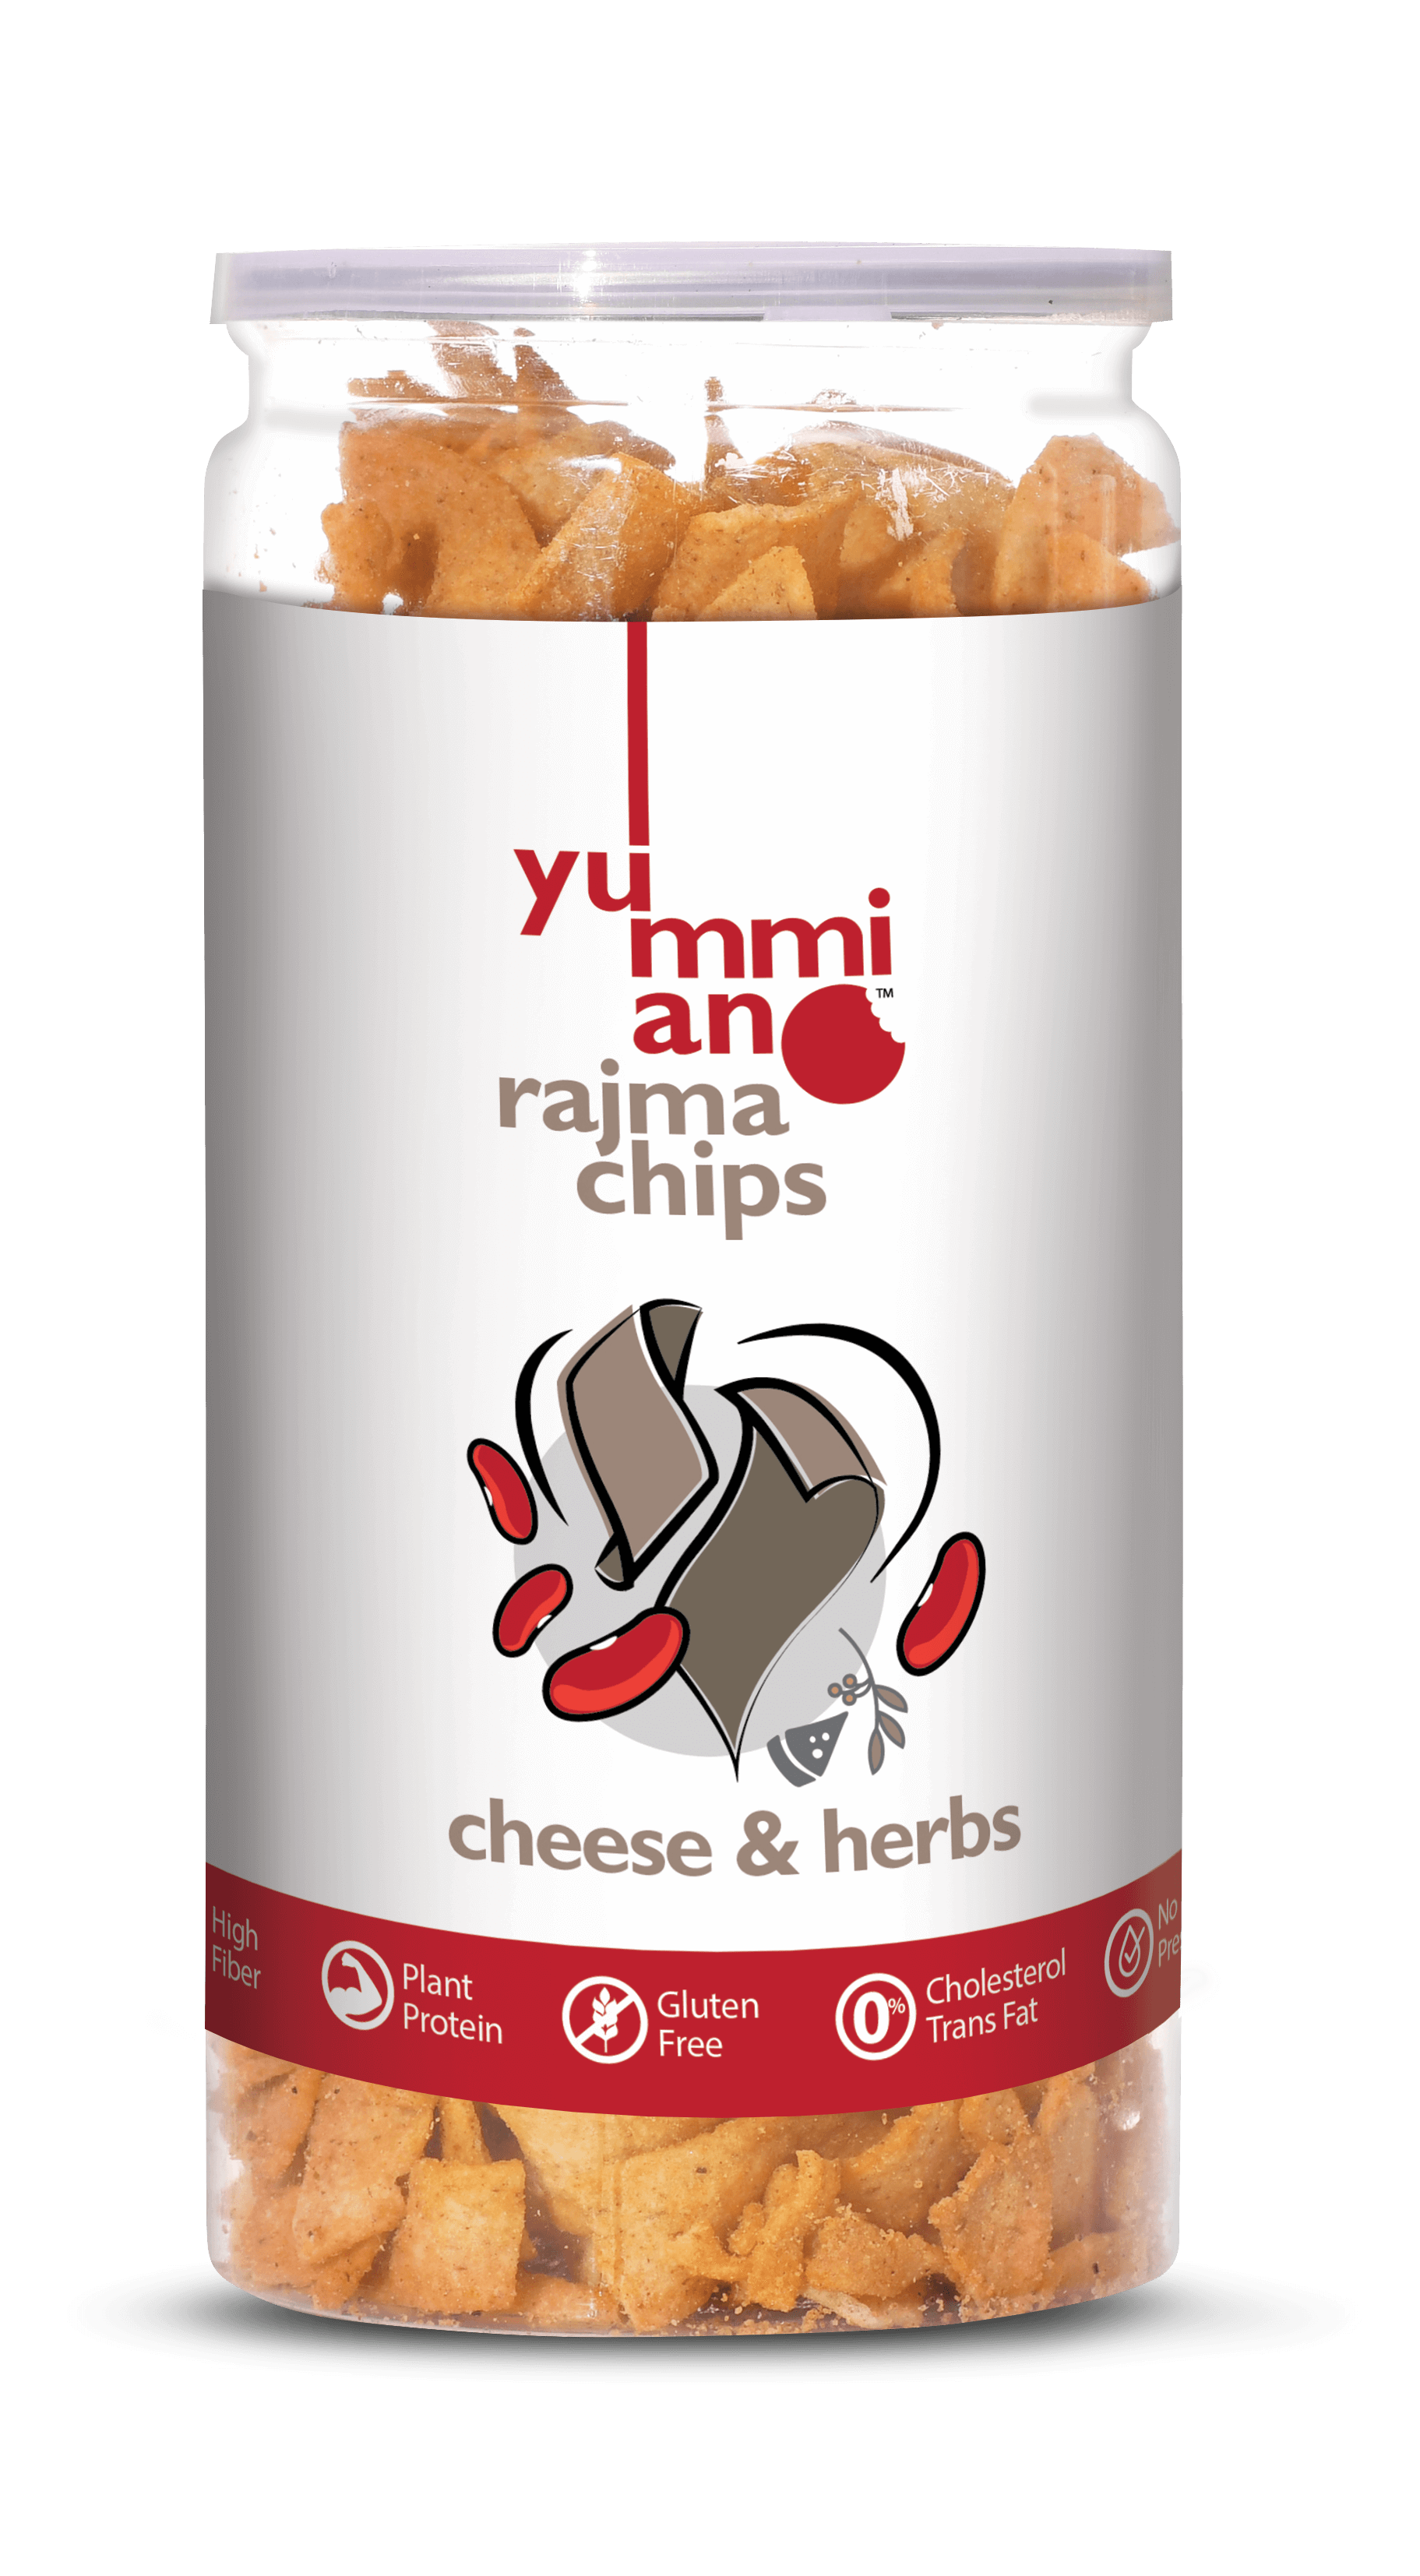 Yummiano Rajma Chips â€šÃ„Ã¶âˆšÃ‘âˆšÂ¨ Cheese & Herbs Image